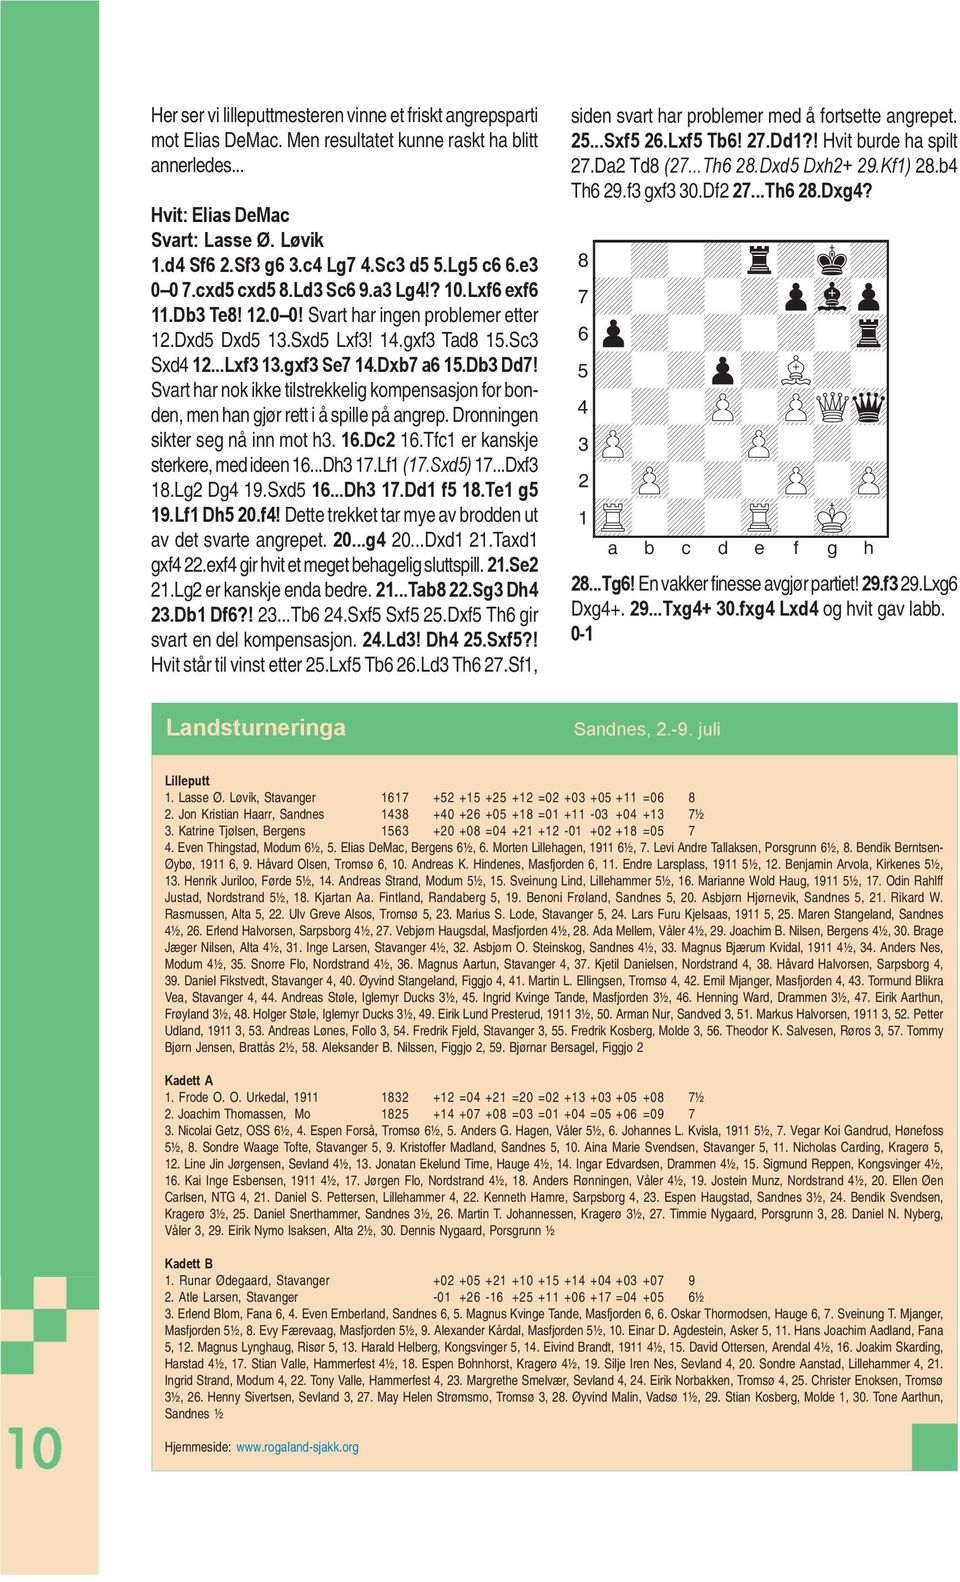 Dxb7 a6 15.Db3 Dd7! Svart har nok ikke tilstrekkelig kompensasjon for bonden, men han gjør rett i å spille på angrep. Dronningen sikter seg nå inn mot h3. 16.Dc2 16.